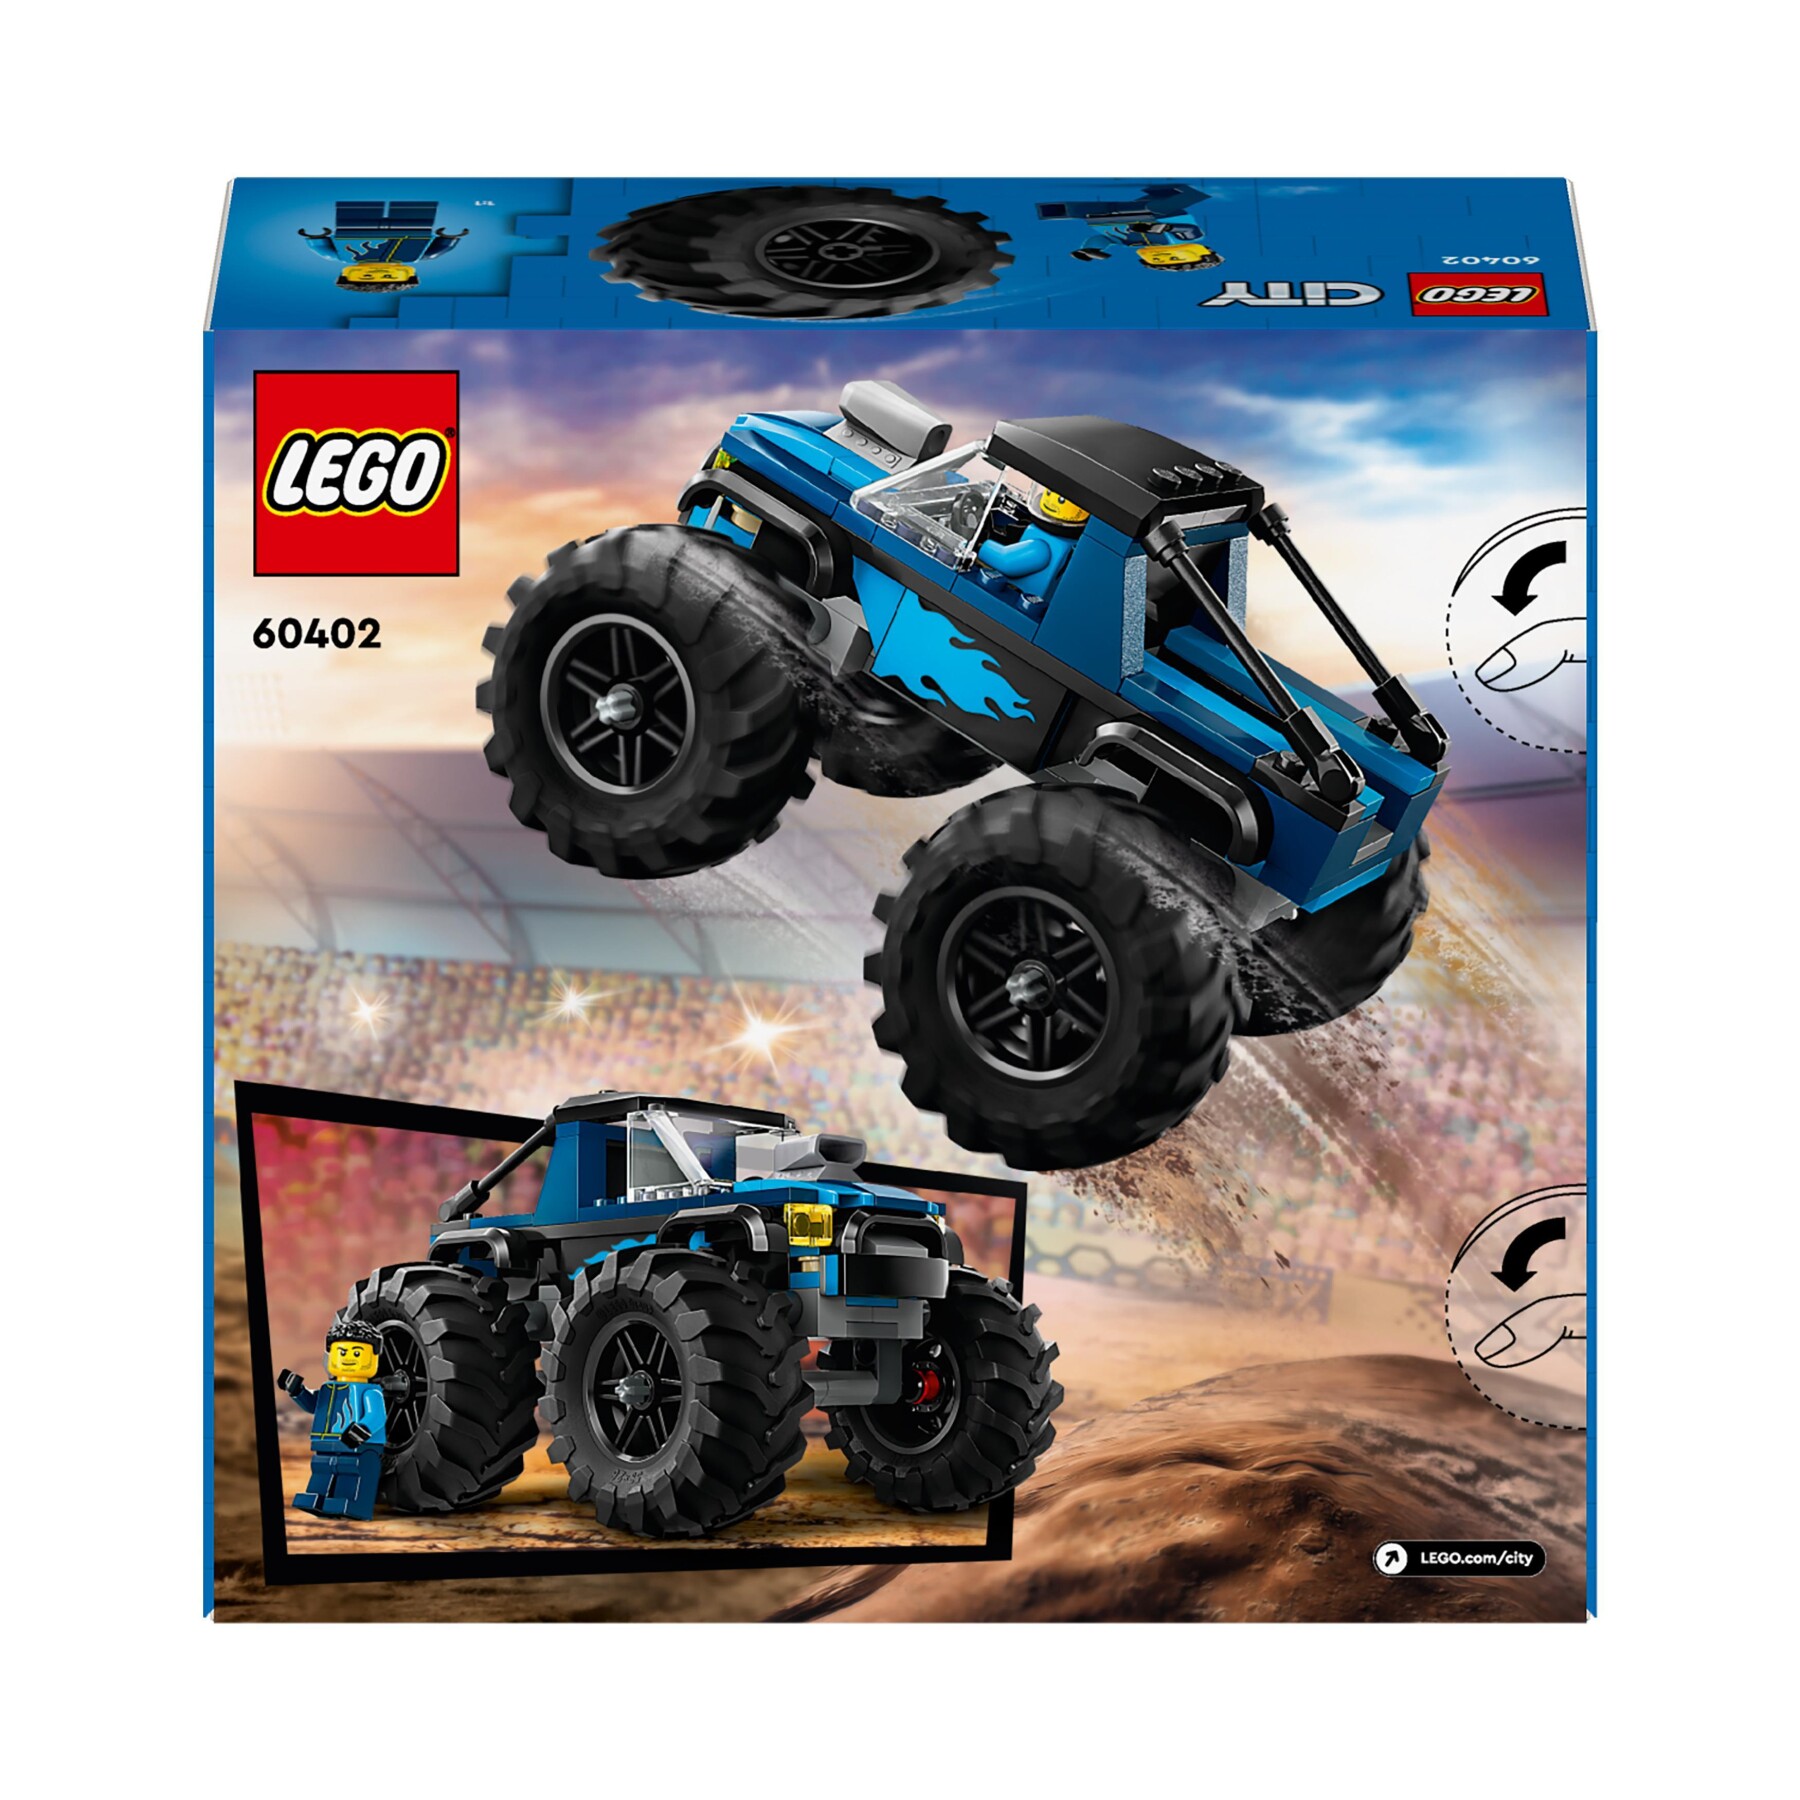 Lego city 60402 monster truck blu, veicolo giocattolo fuoristrada, giochi per bambini di 5+ anni con minifigure del pilota - LEGO CITY